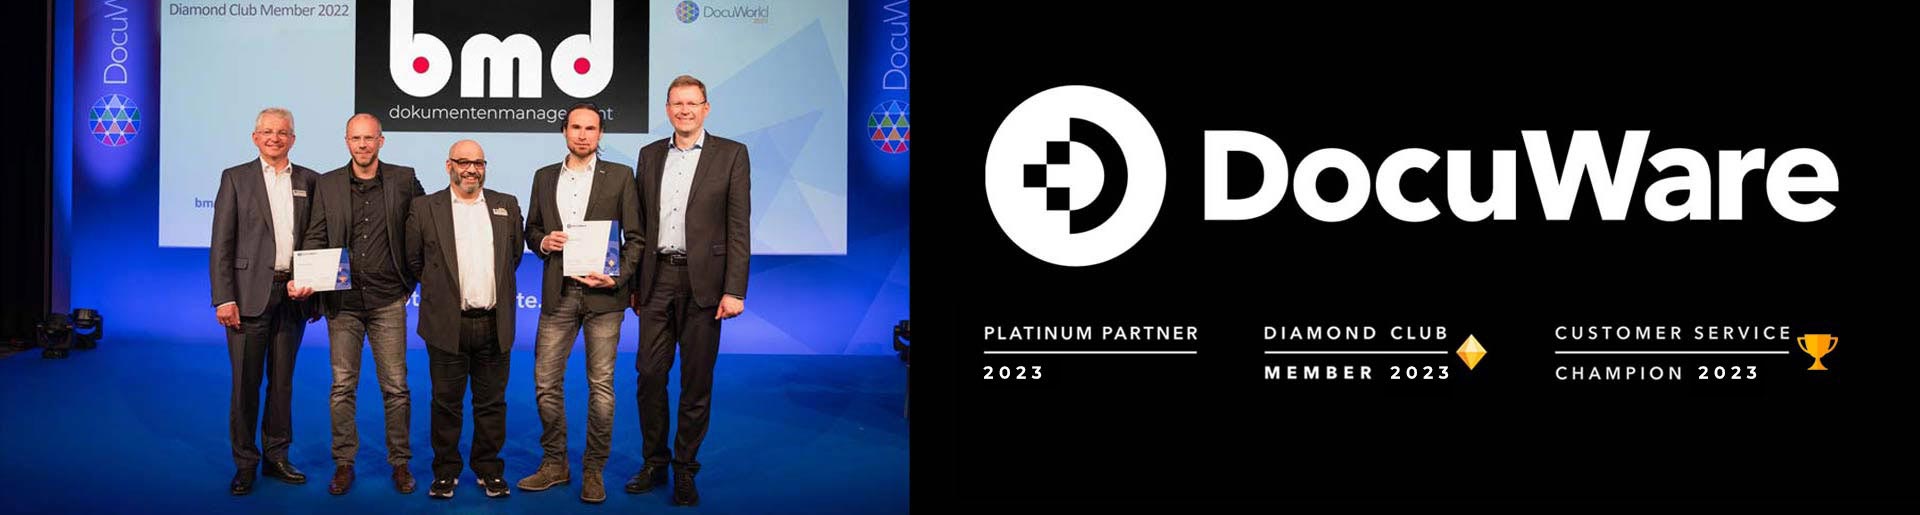 Die bmd GmbH ist auf der DocuWorld User Conference 2022 als  Mitglied im DocuWare Diamond Club geehrt worden. In diesem Rahmen wurde bmd auch der Customer Service Champion Award für den besten Kunden-Service verliehen. 